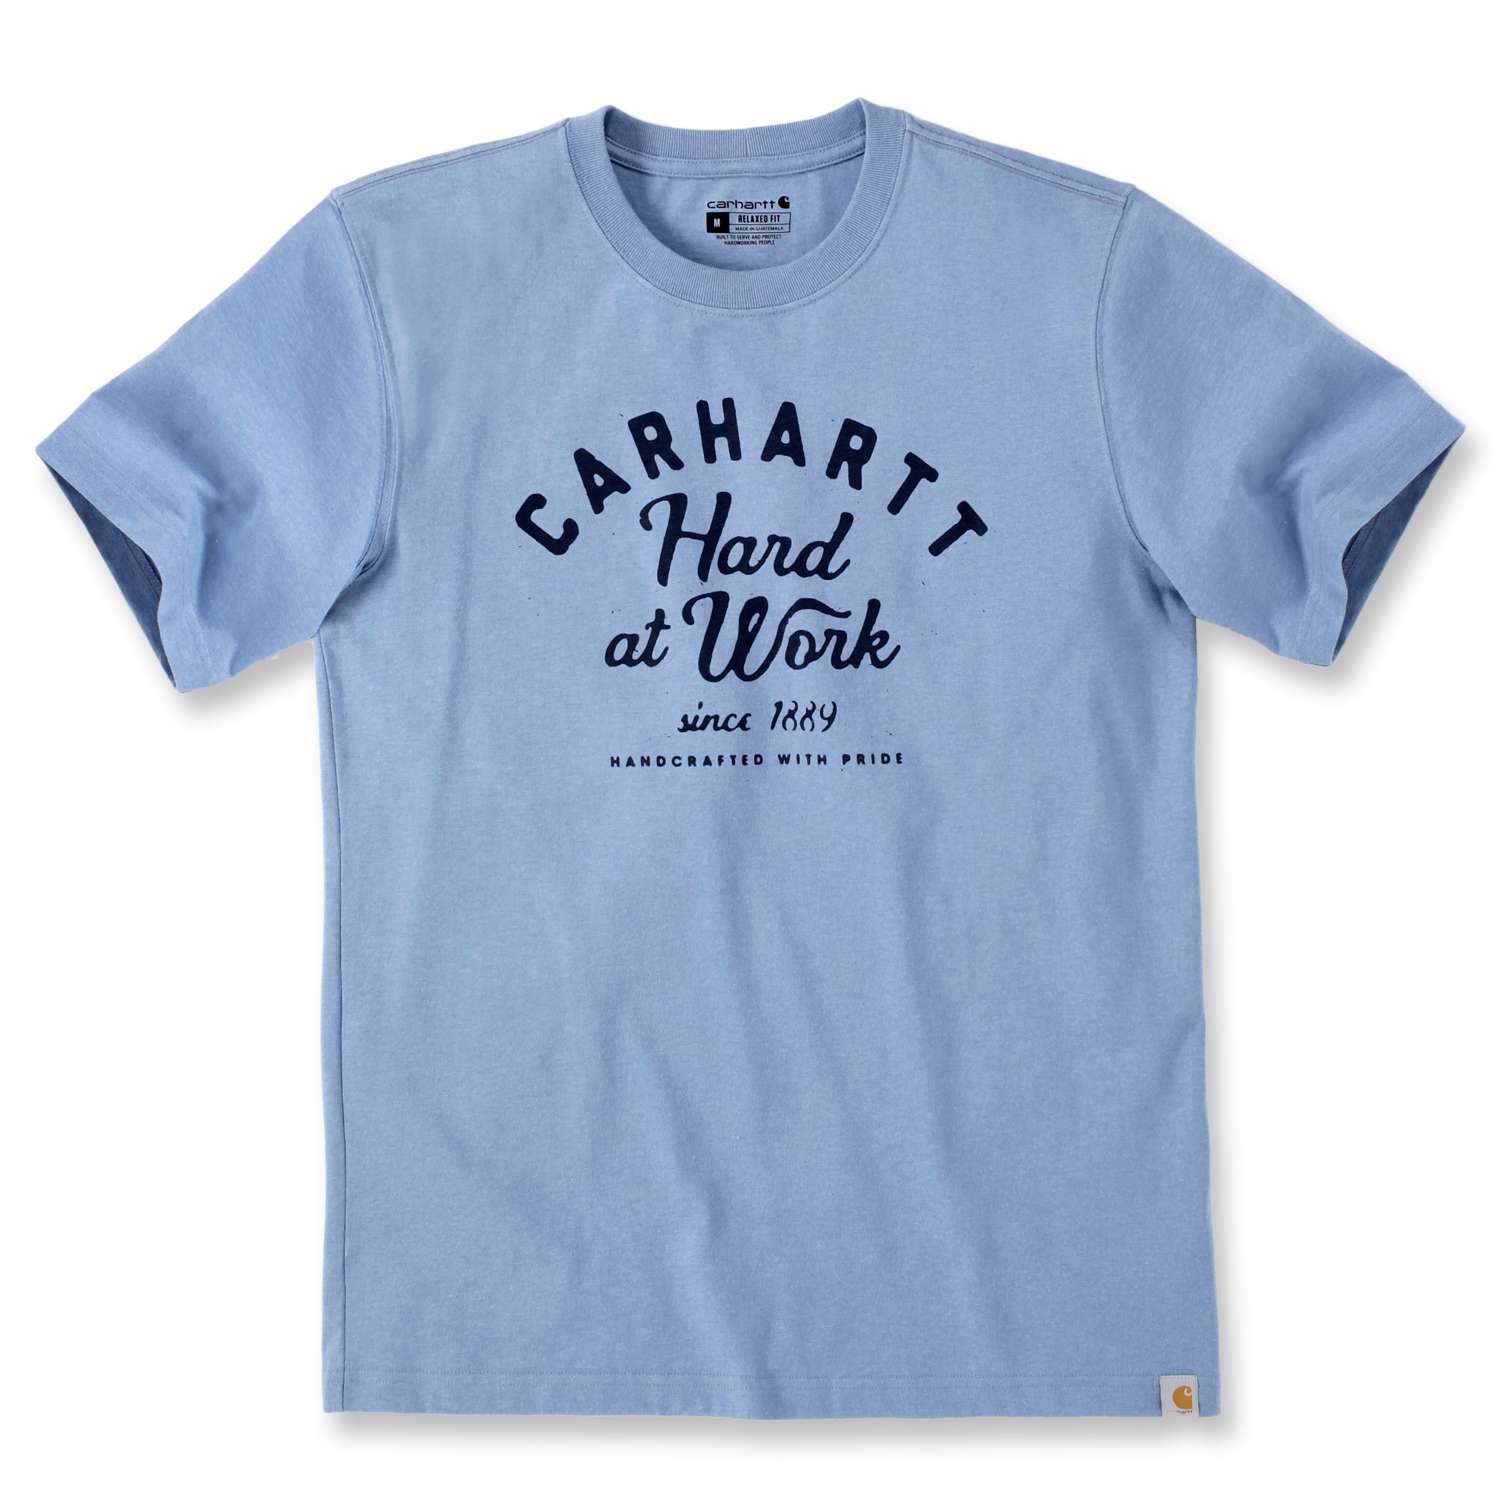 Kurzarm-T-Shirt mit Carhartt Hard At Work Print